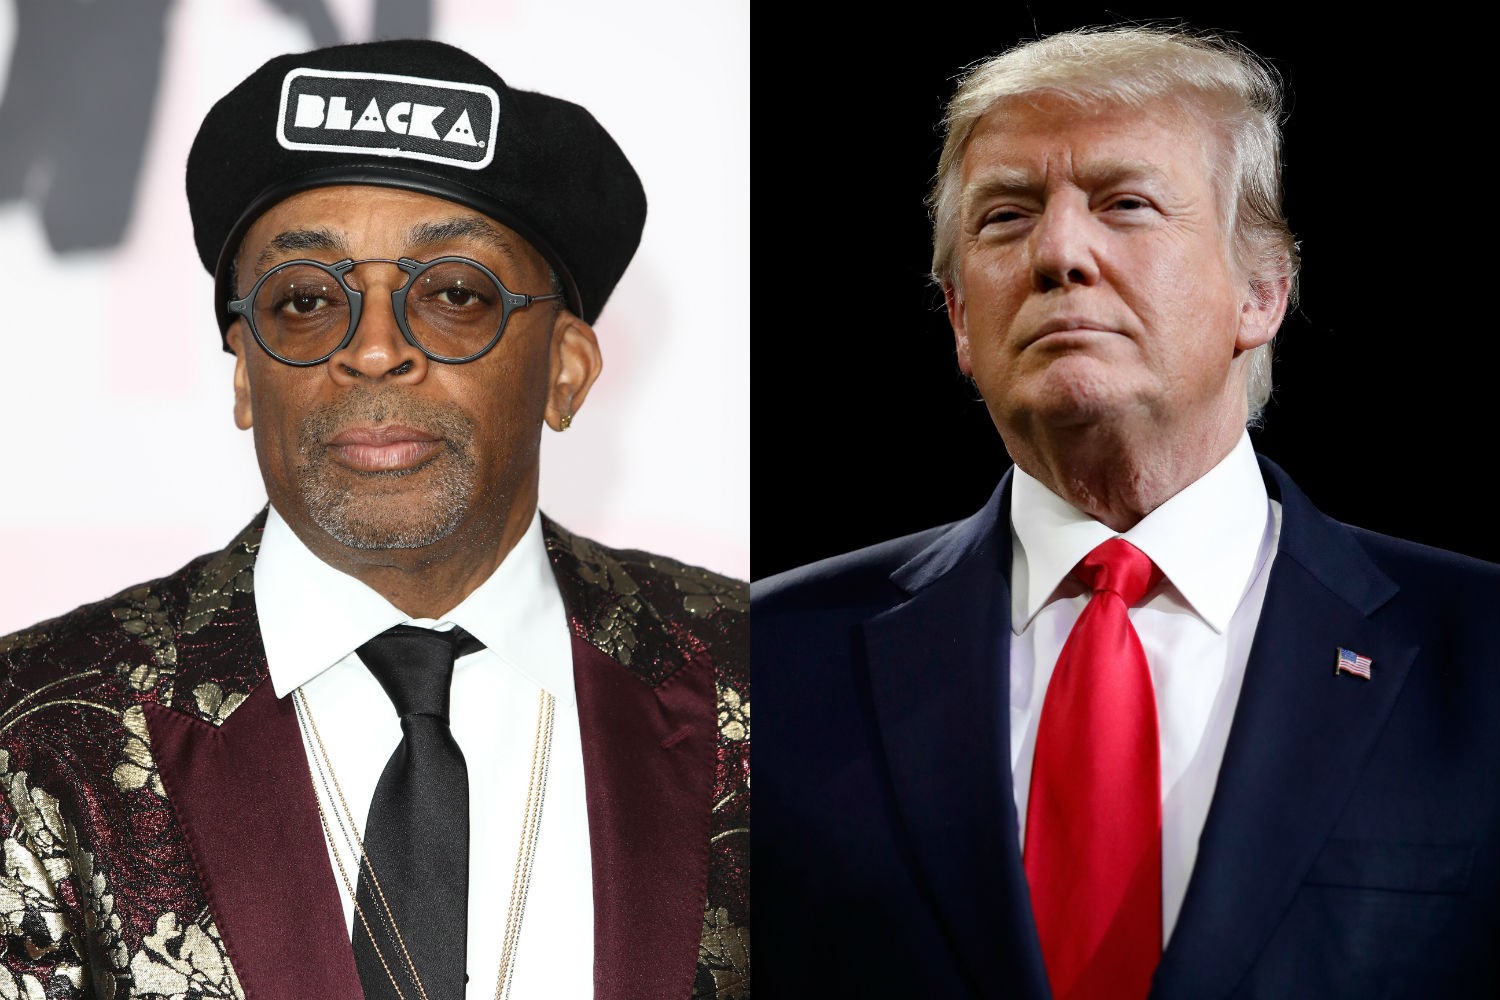 Oscar 2019 | Donald Trump responde crítica de Spike Lee e acusa cineasta de fazer “ataque racista”